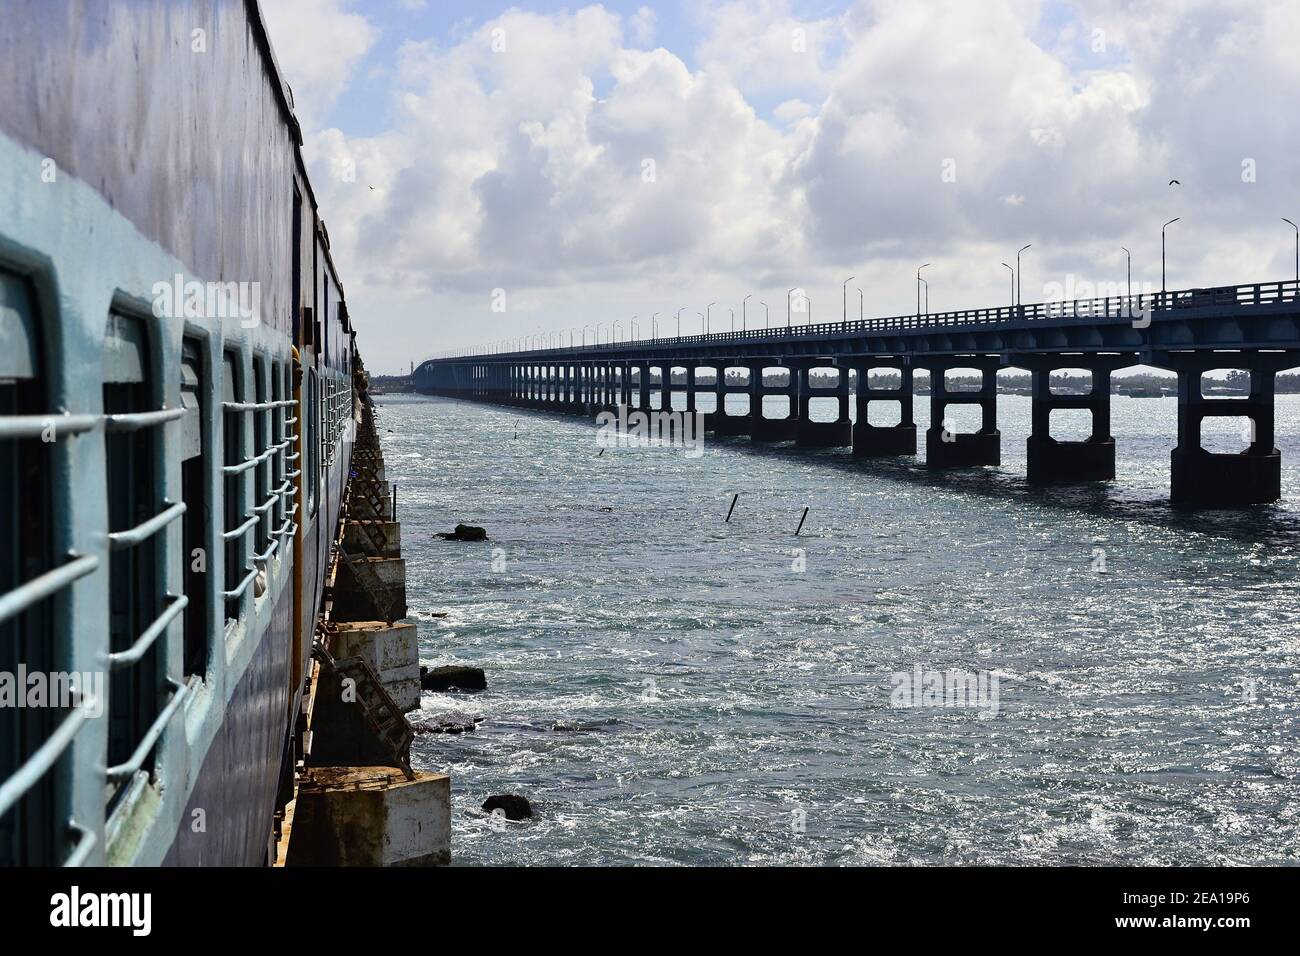 Indischer Eisenbahnzug auf der Eisenbahnbrücke über das Meer genannt Pamban Brücke, die Rameswaram auf Pamban Insel mit dem Festland verbindet. Lange Straße bridg Stockfoto